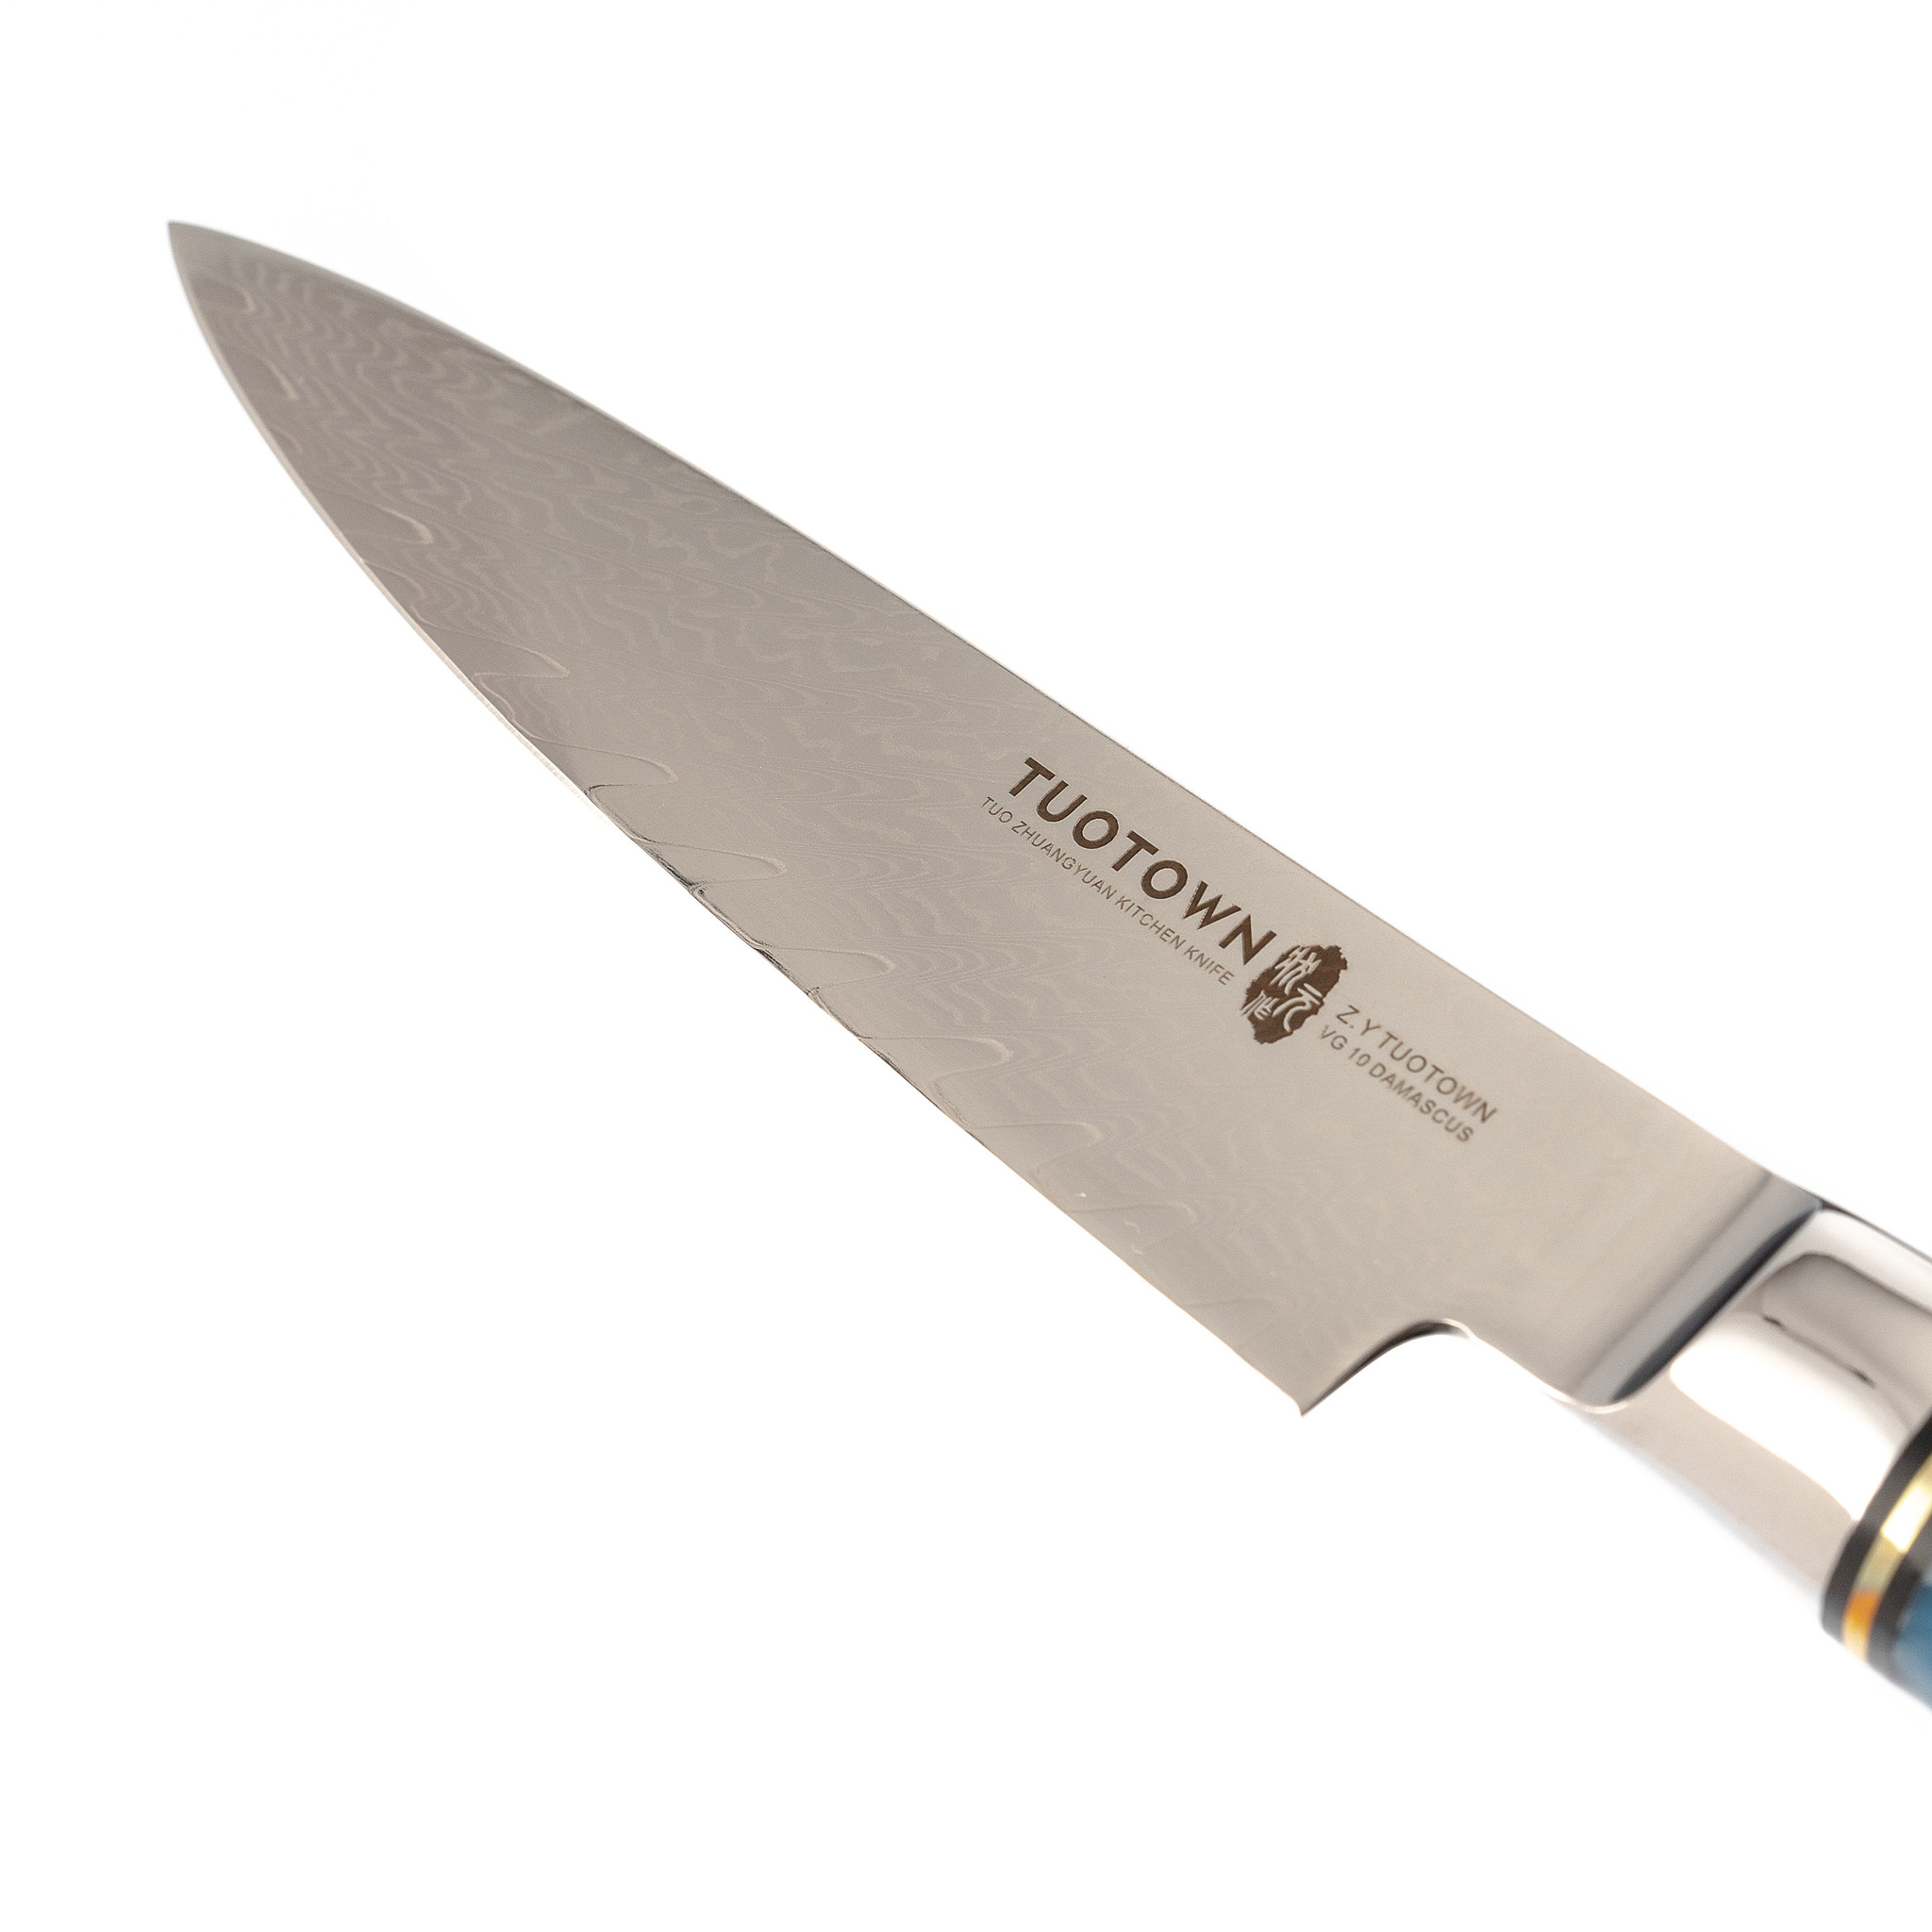 Кухонный универсальный нож Tuotown TWB-D3, сталь VG-10, рукоять дерево/эпоксидка - фото 2